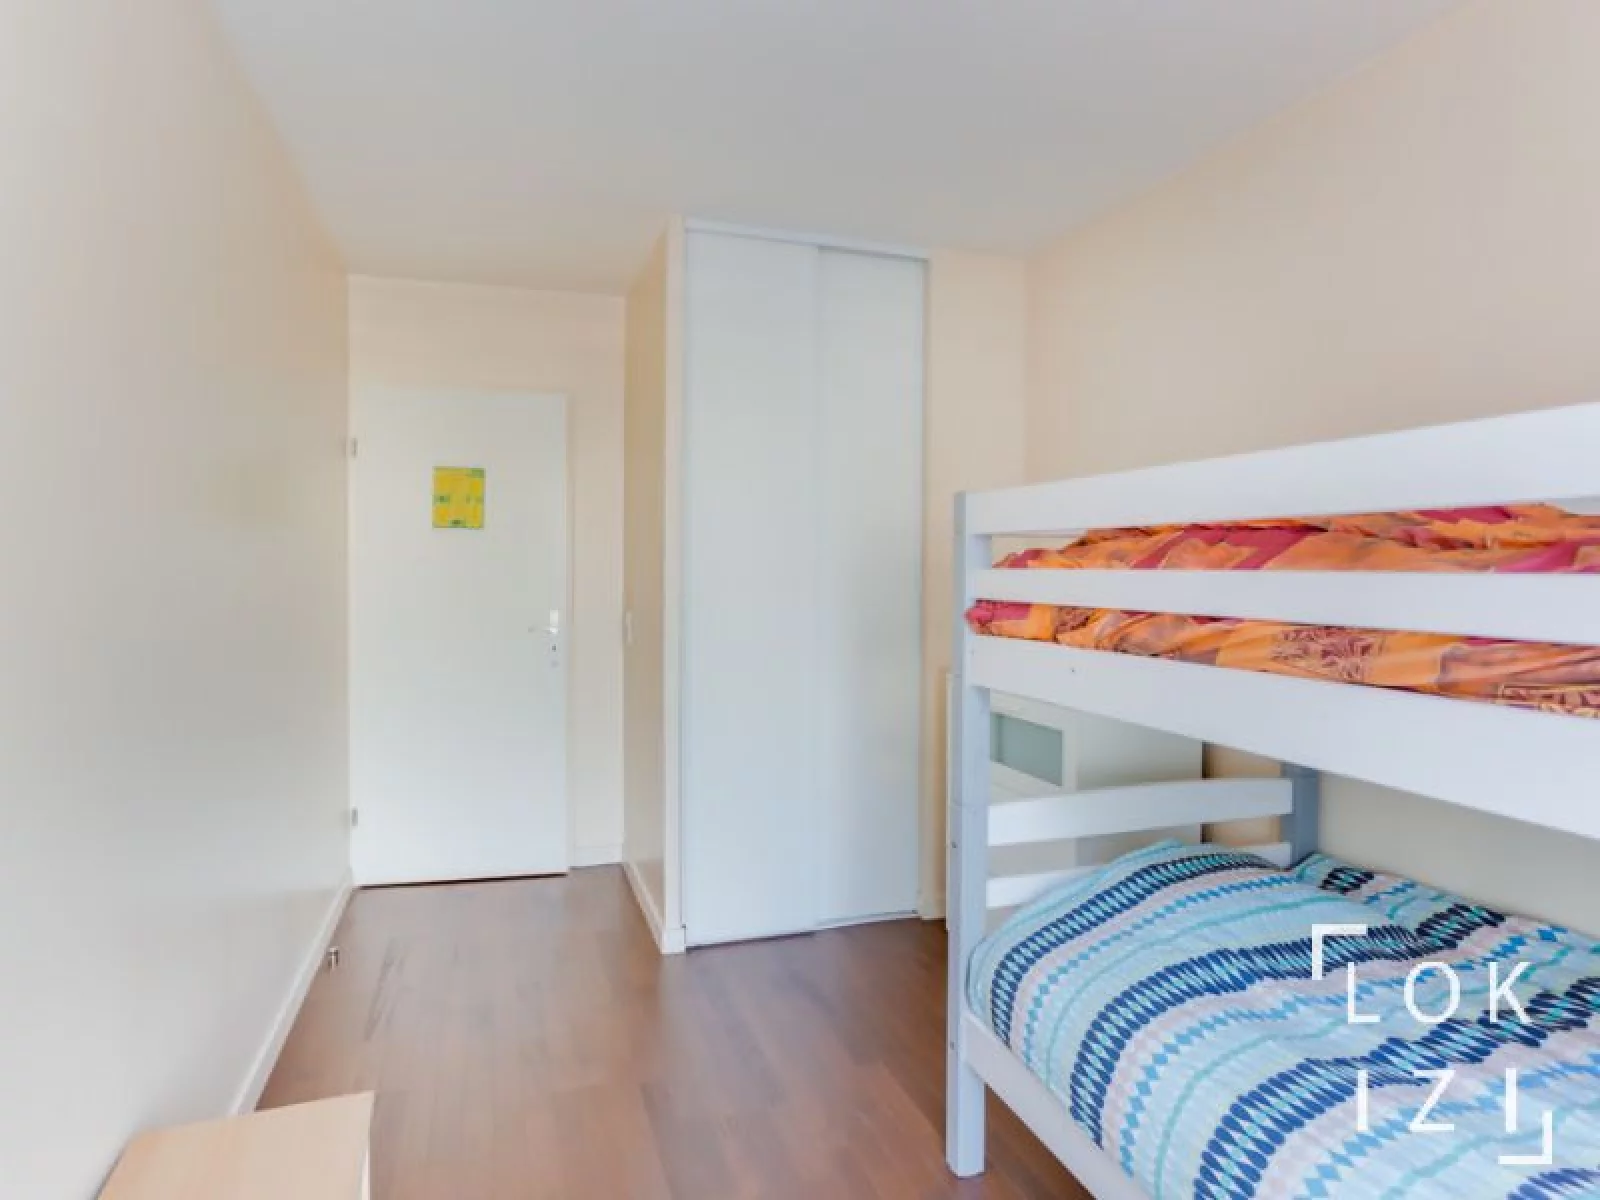 Location appartement meublé 3 pièces 64m² avec terrasse (Paris - Rosny s/ Bois 93)